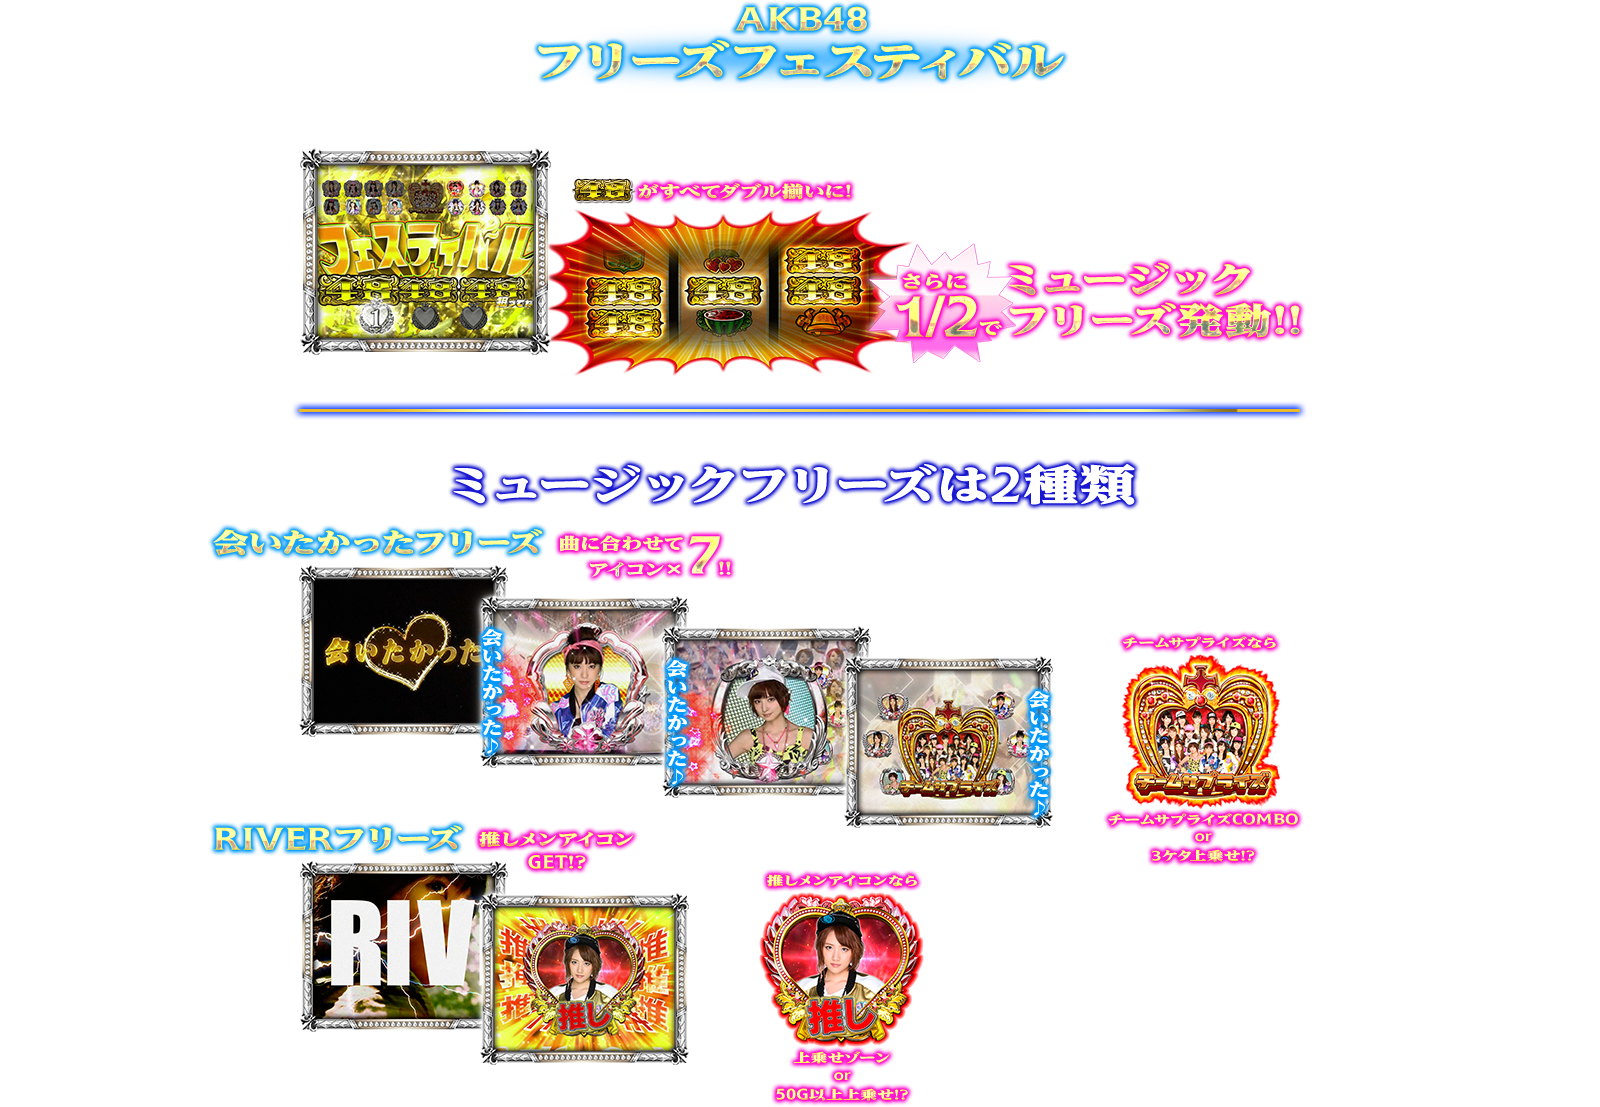 ぱちスロAKB48 バラの儀式の演出紹介。SPECIAL上乗せゾーンのKB48フリーズフェスティバルです。AKB48ファン、スロット初心者、ヘビーユーザーまで誰もが楽しめるDDスペックで登場!!